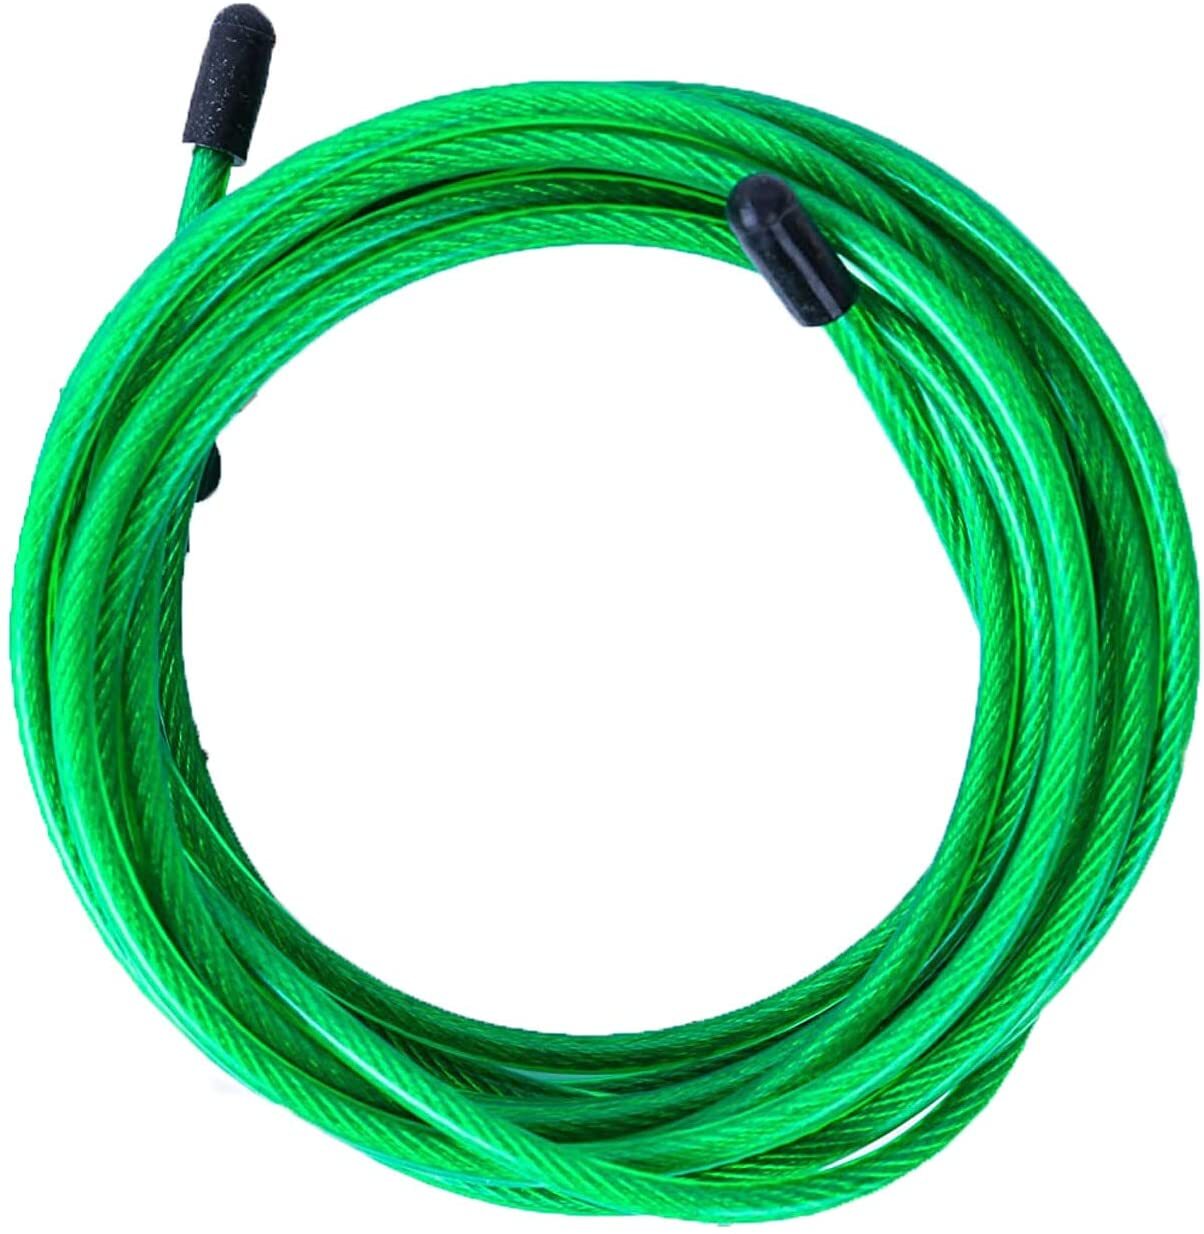 Cable De Repuesto Para Comba De Saltar Velites 4 Mm - Verde